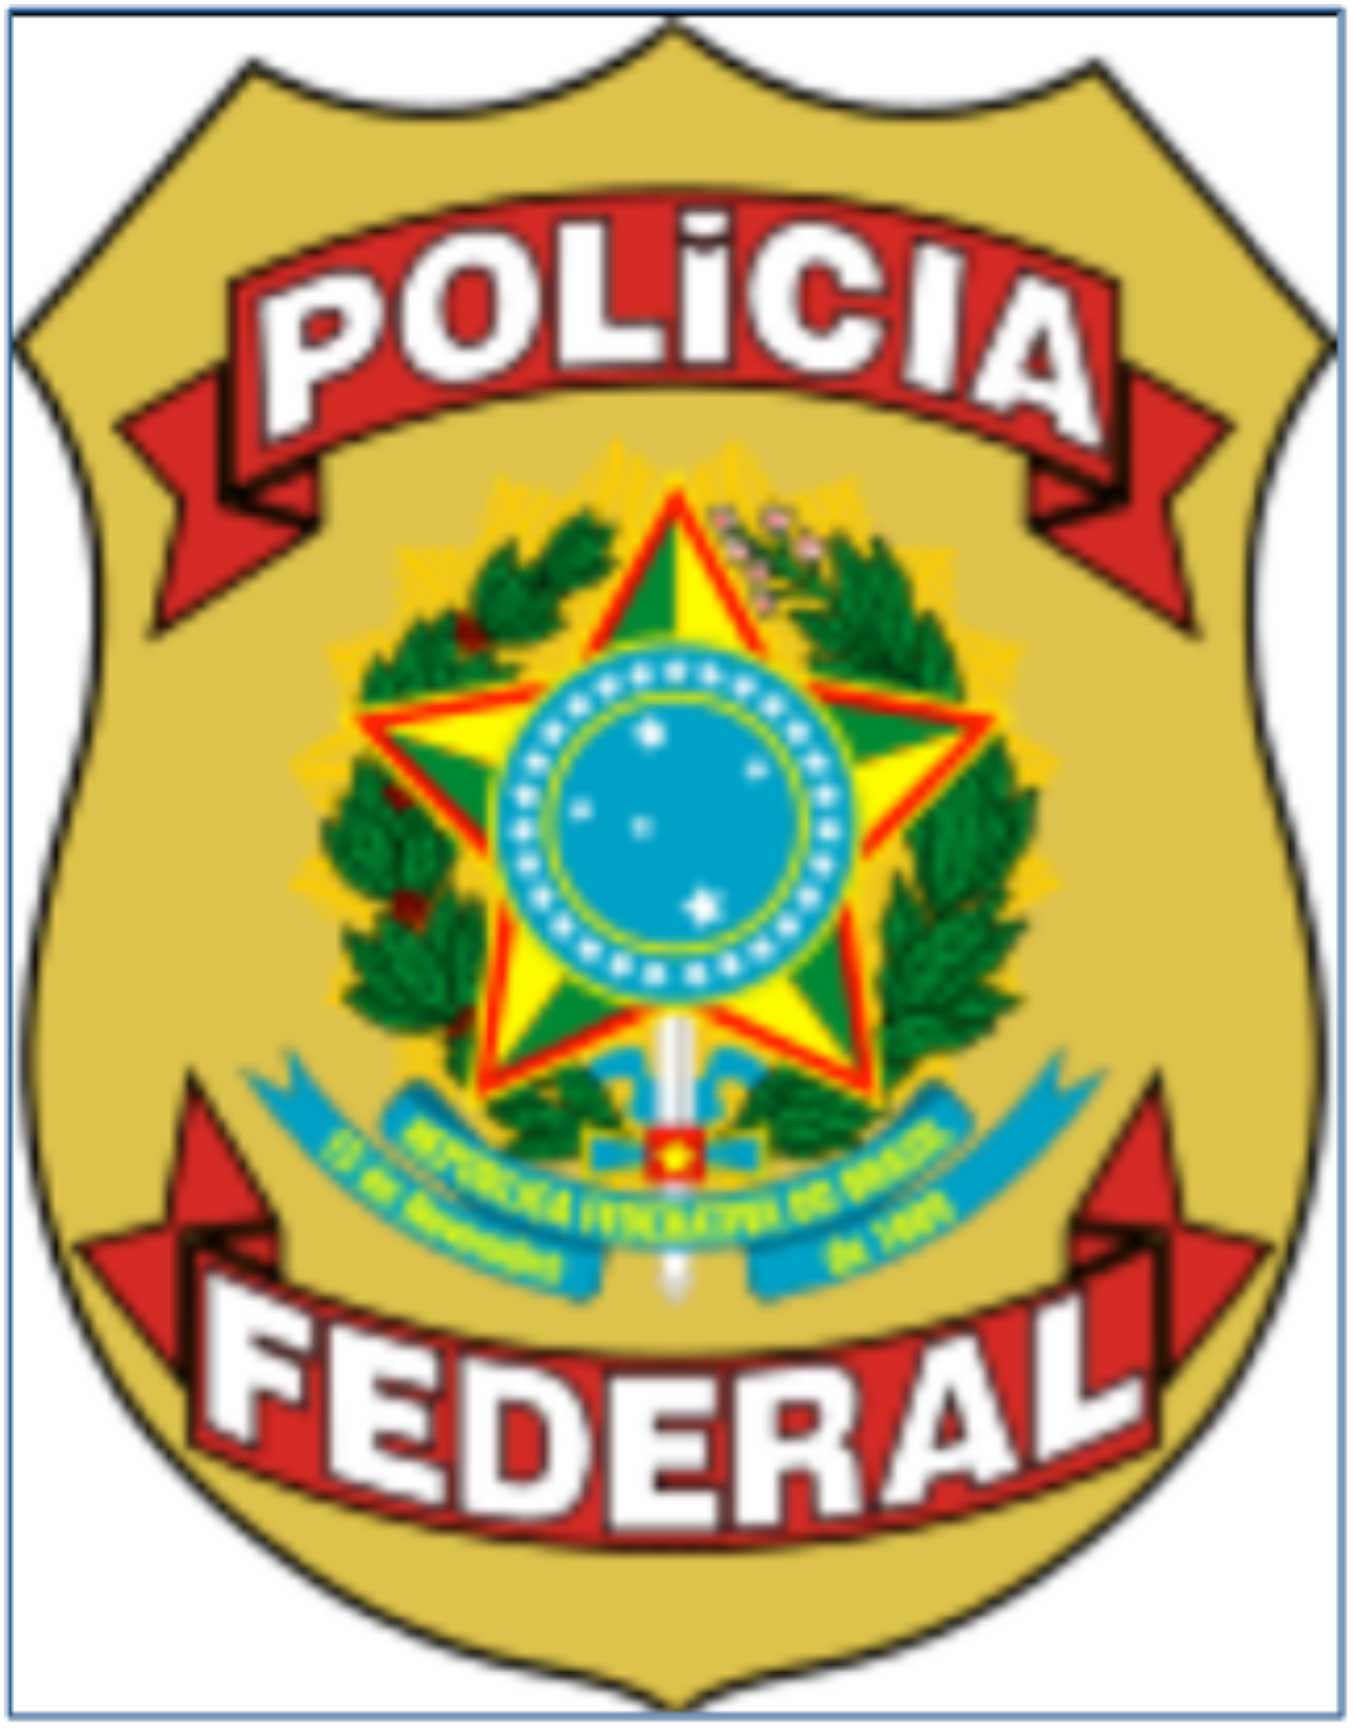 Brazil badge